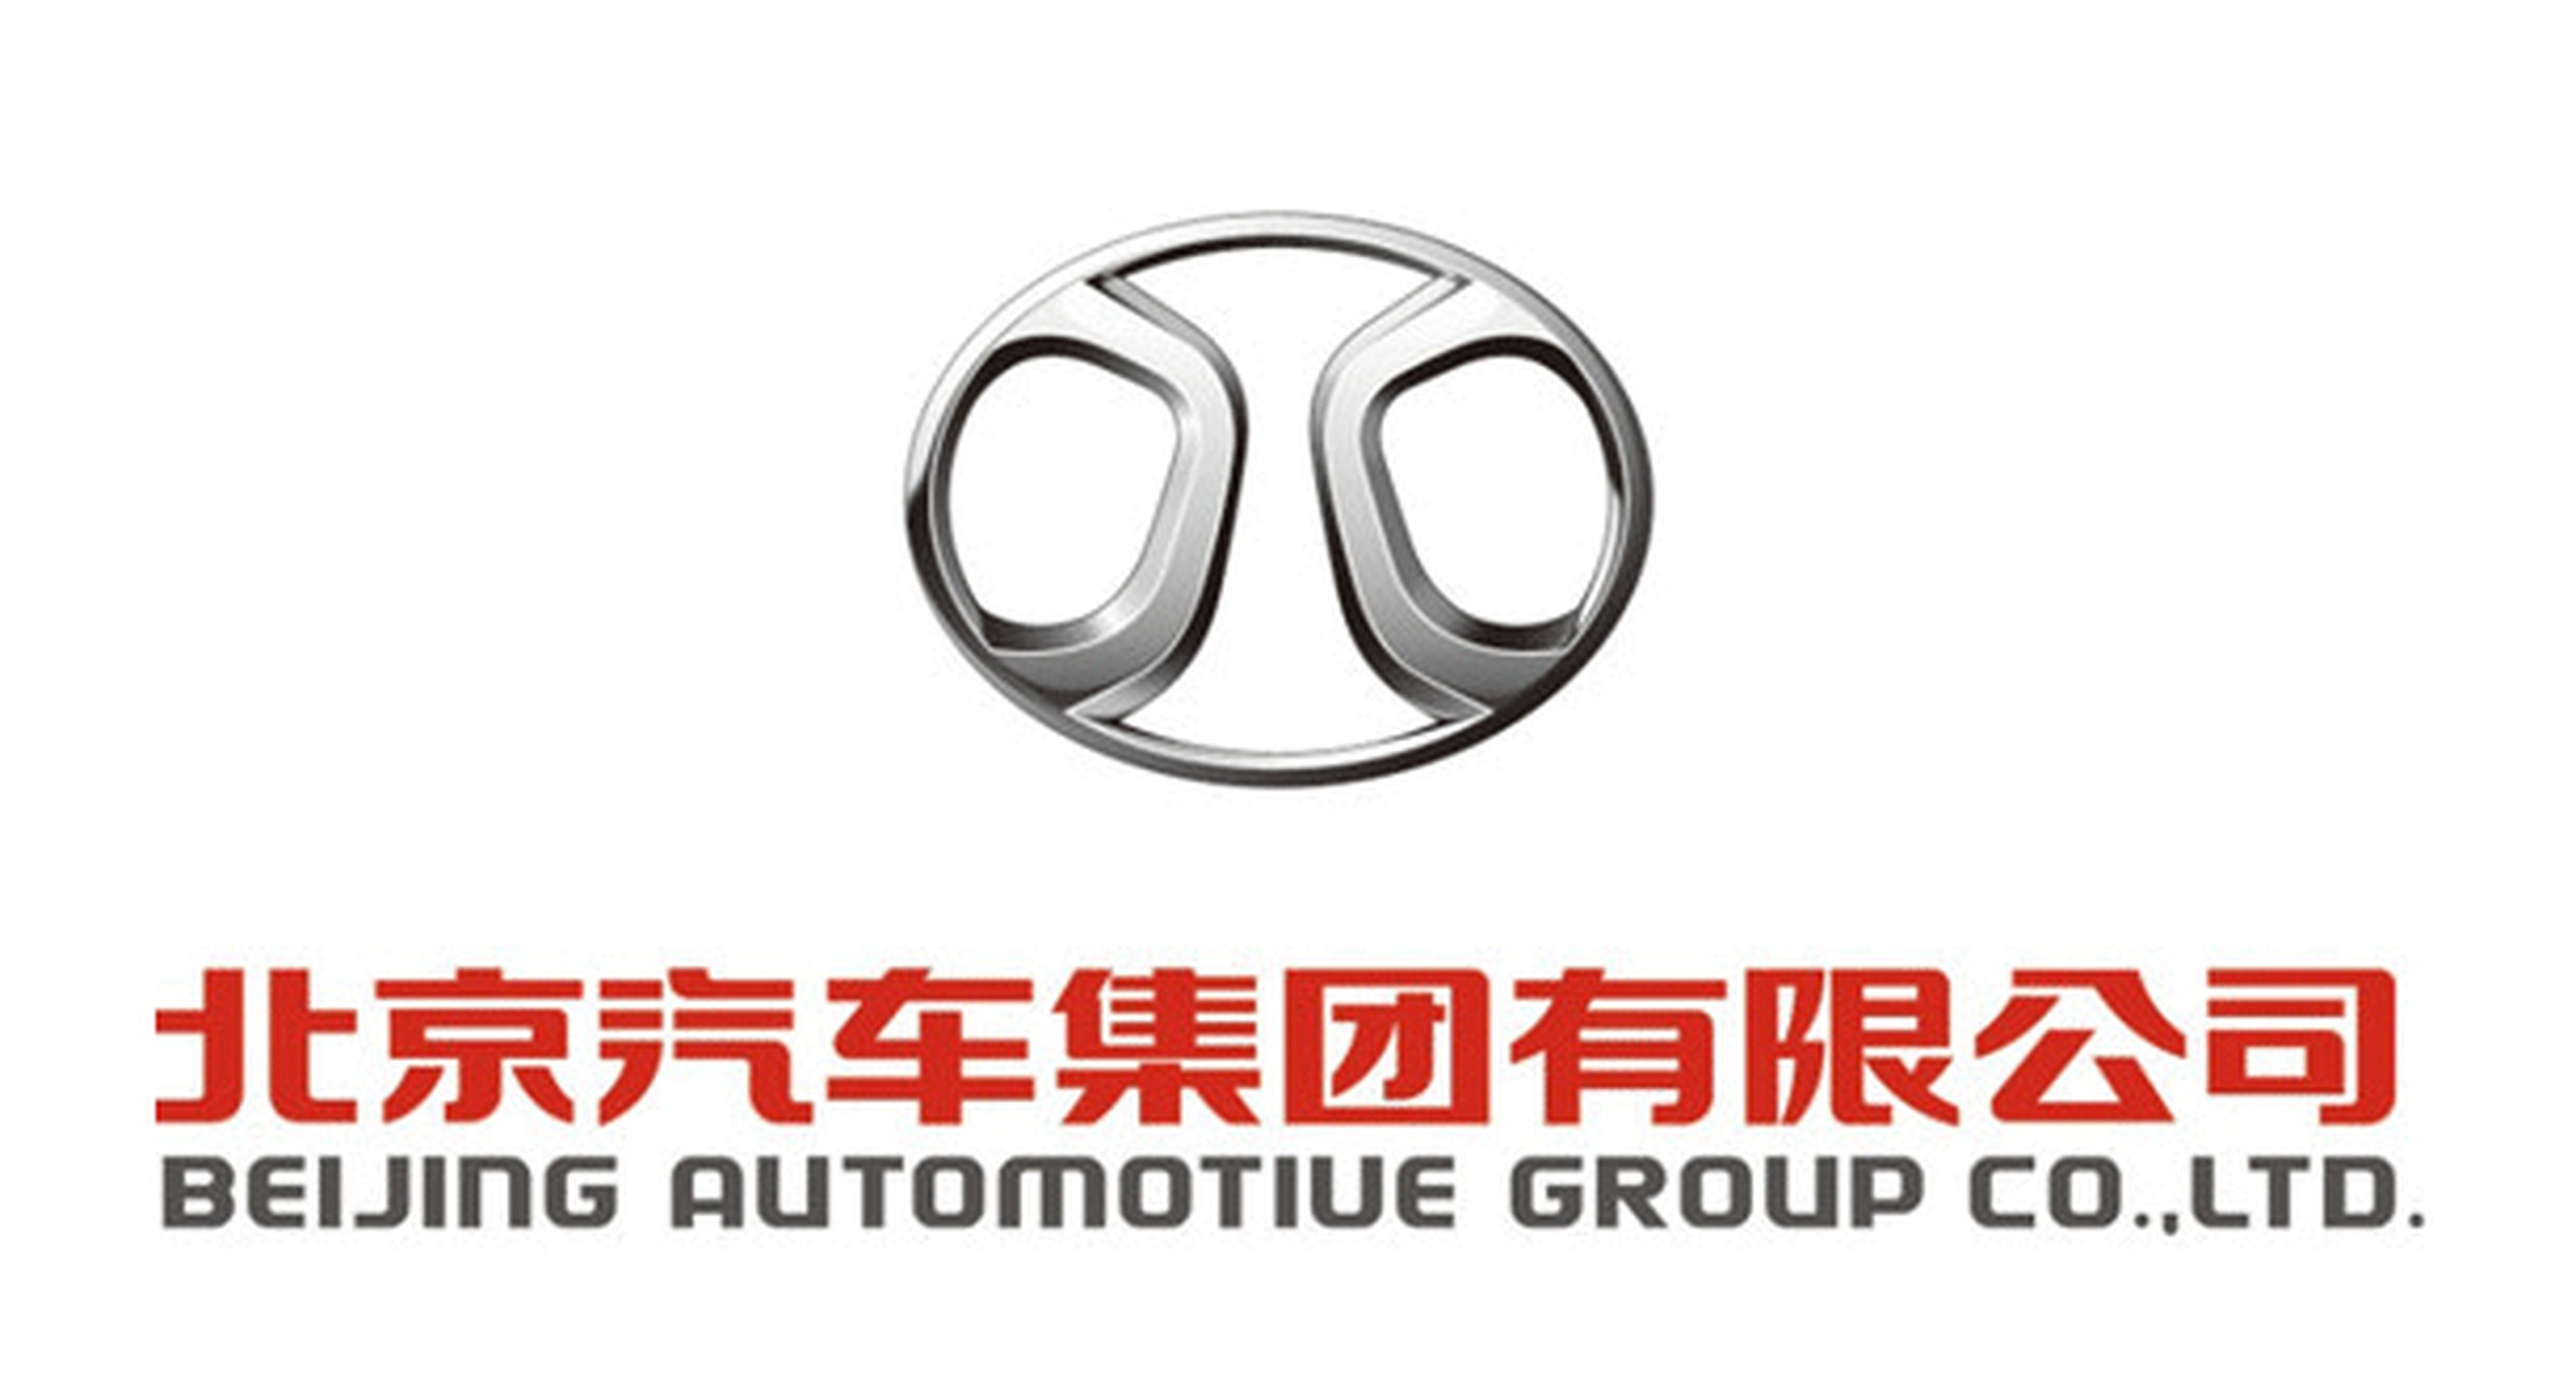 Beijing Auto quiere comprar una marca de coches europea